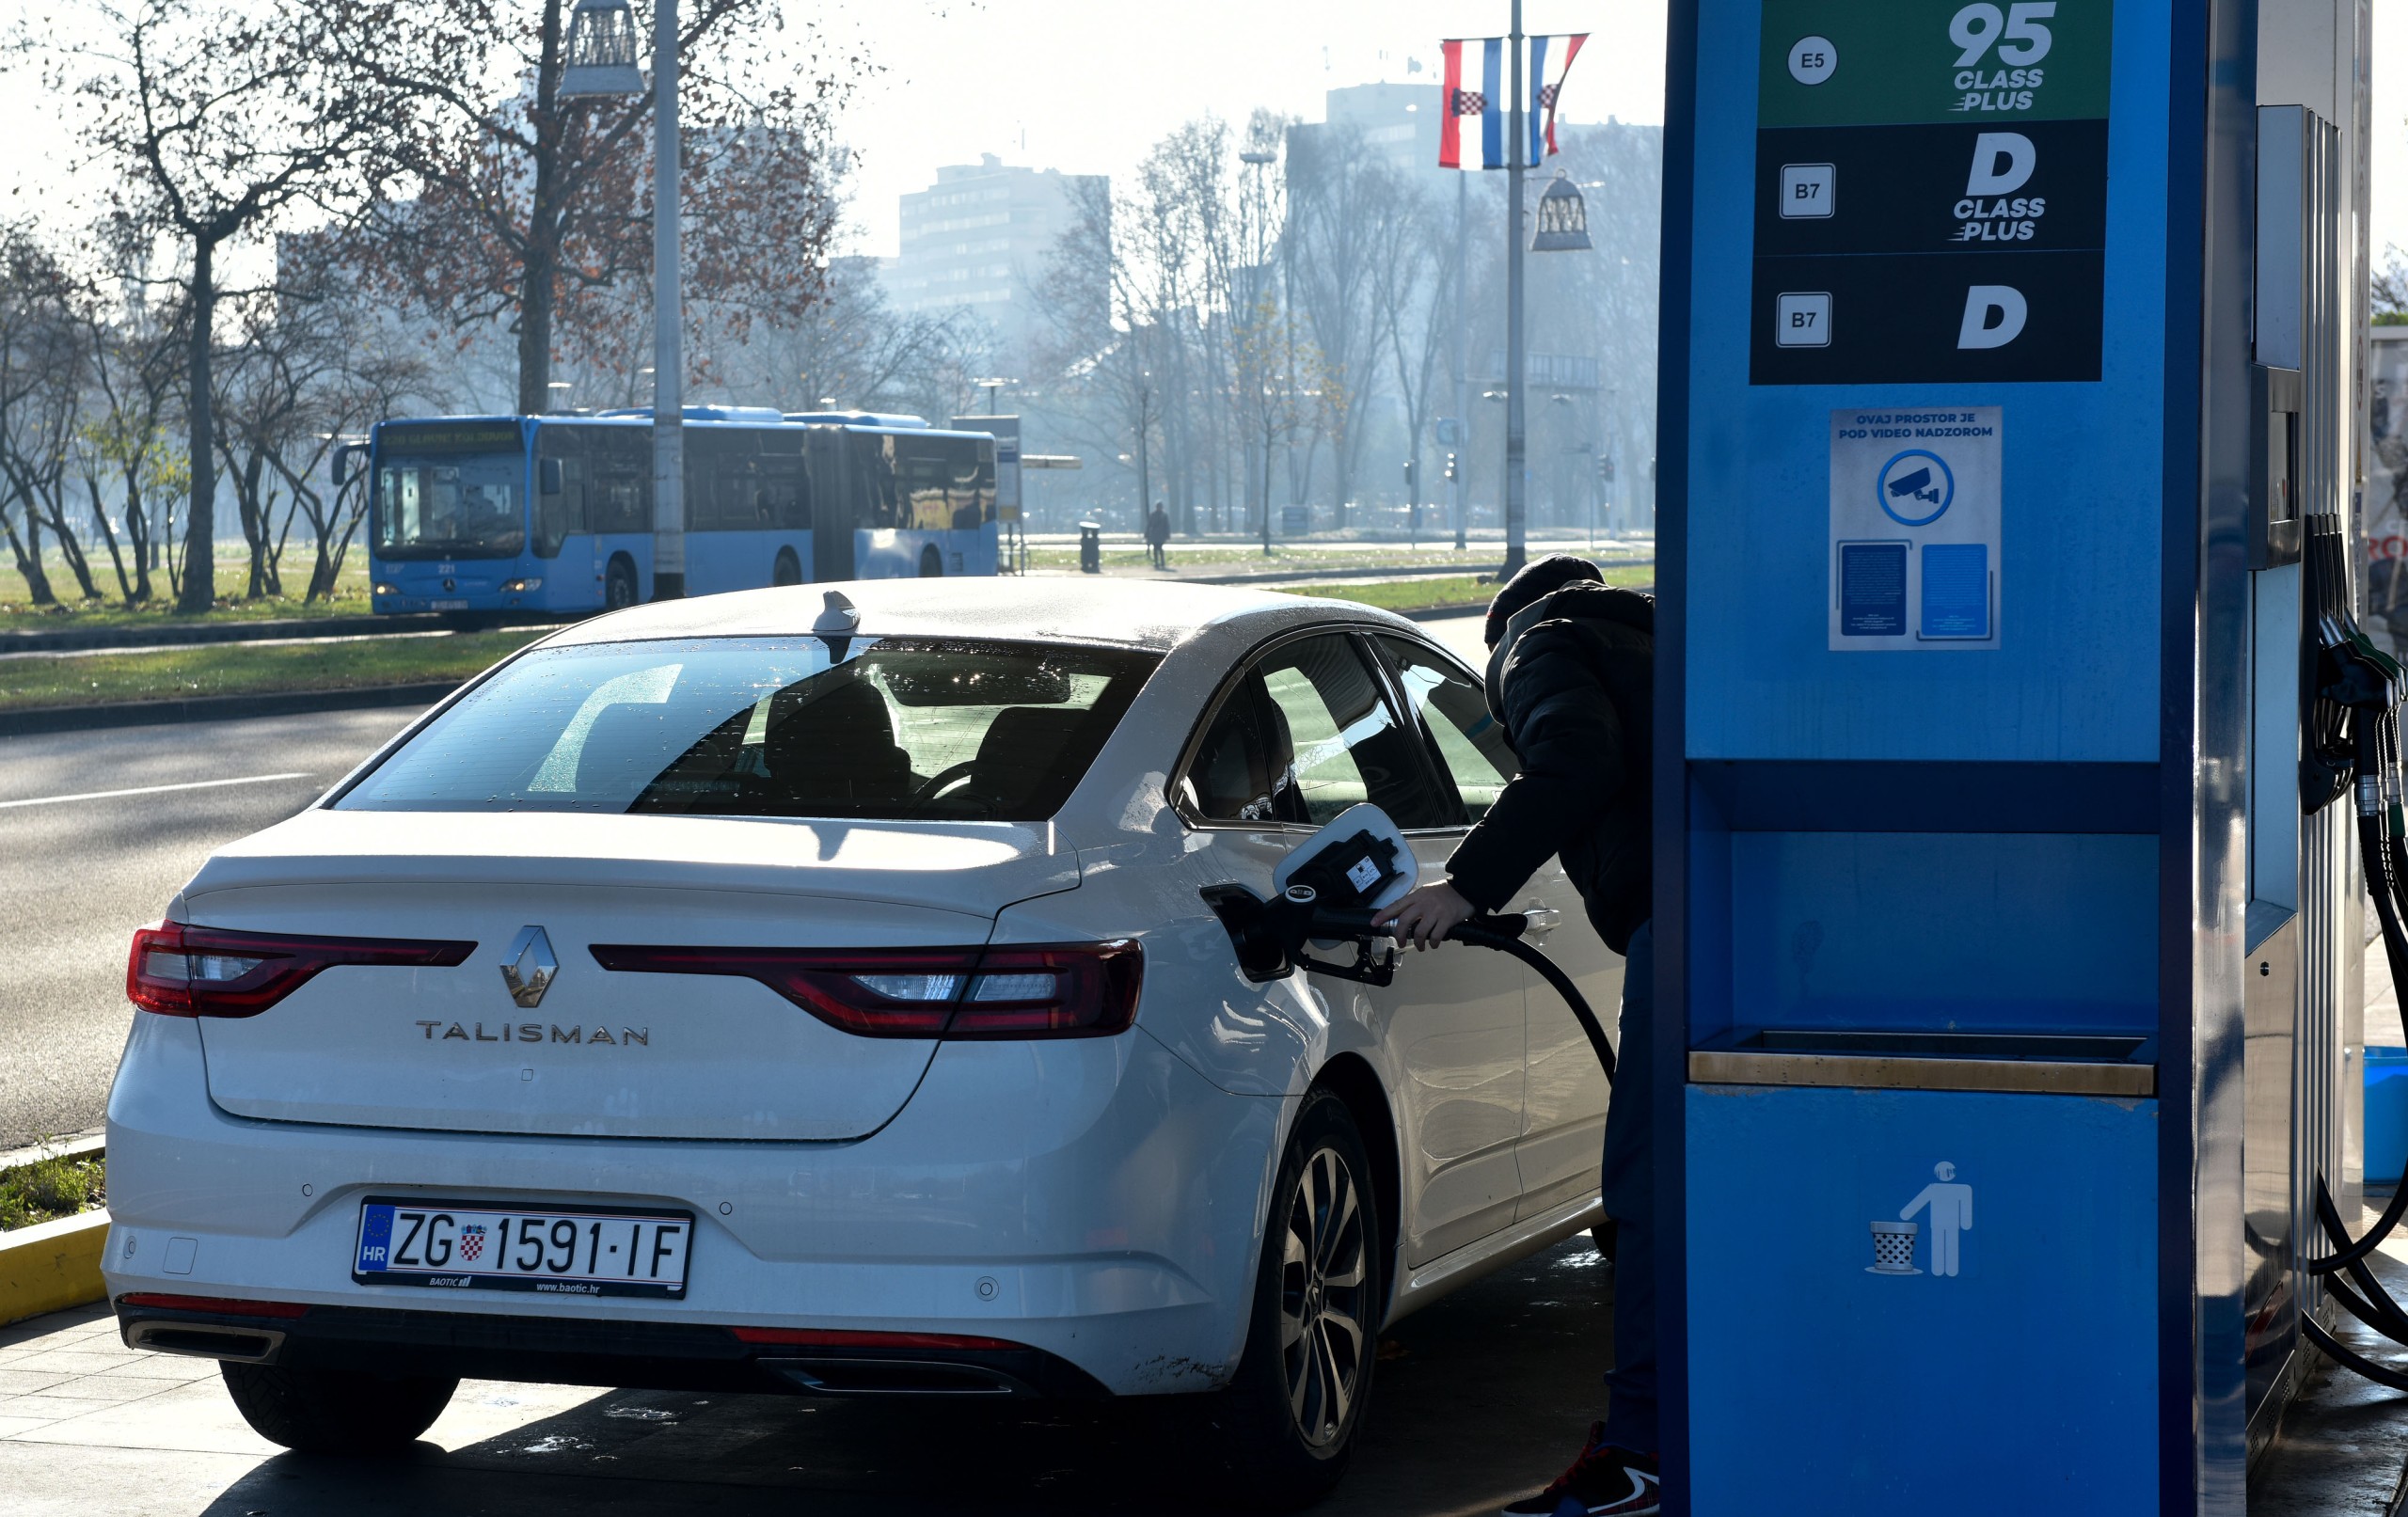 07.12.2021., Zagreb - Nakon gotovo dva mjeseca ogranicenih cijena benzina i dizela, na benzinskim crpkama od ponoci je opet sve prepusteno trzistu. Photo: Davorin Visnjic/PIXSELL